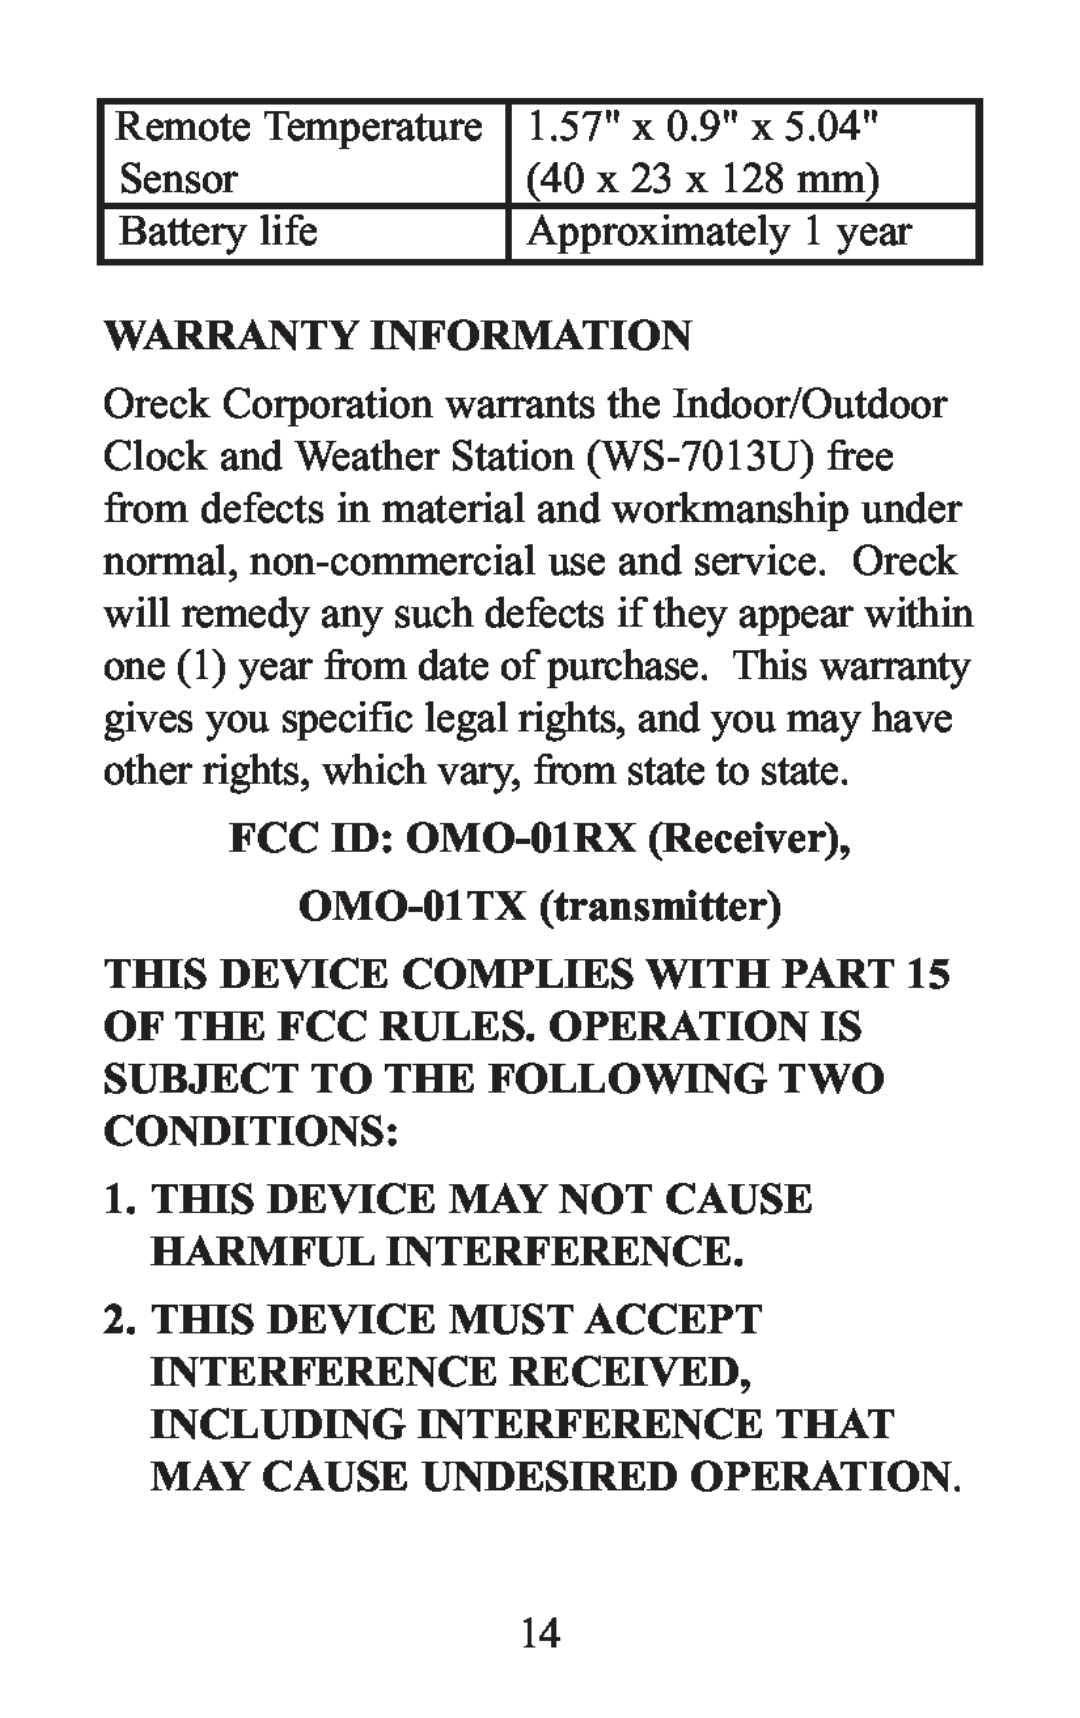 Oreck WS-7013U instruction manual Warranty Information, FCC ID OMO-01RX Receiver OMO-01TX transmitter 